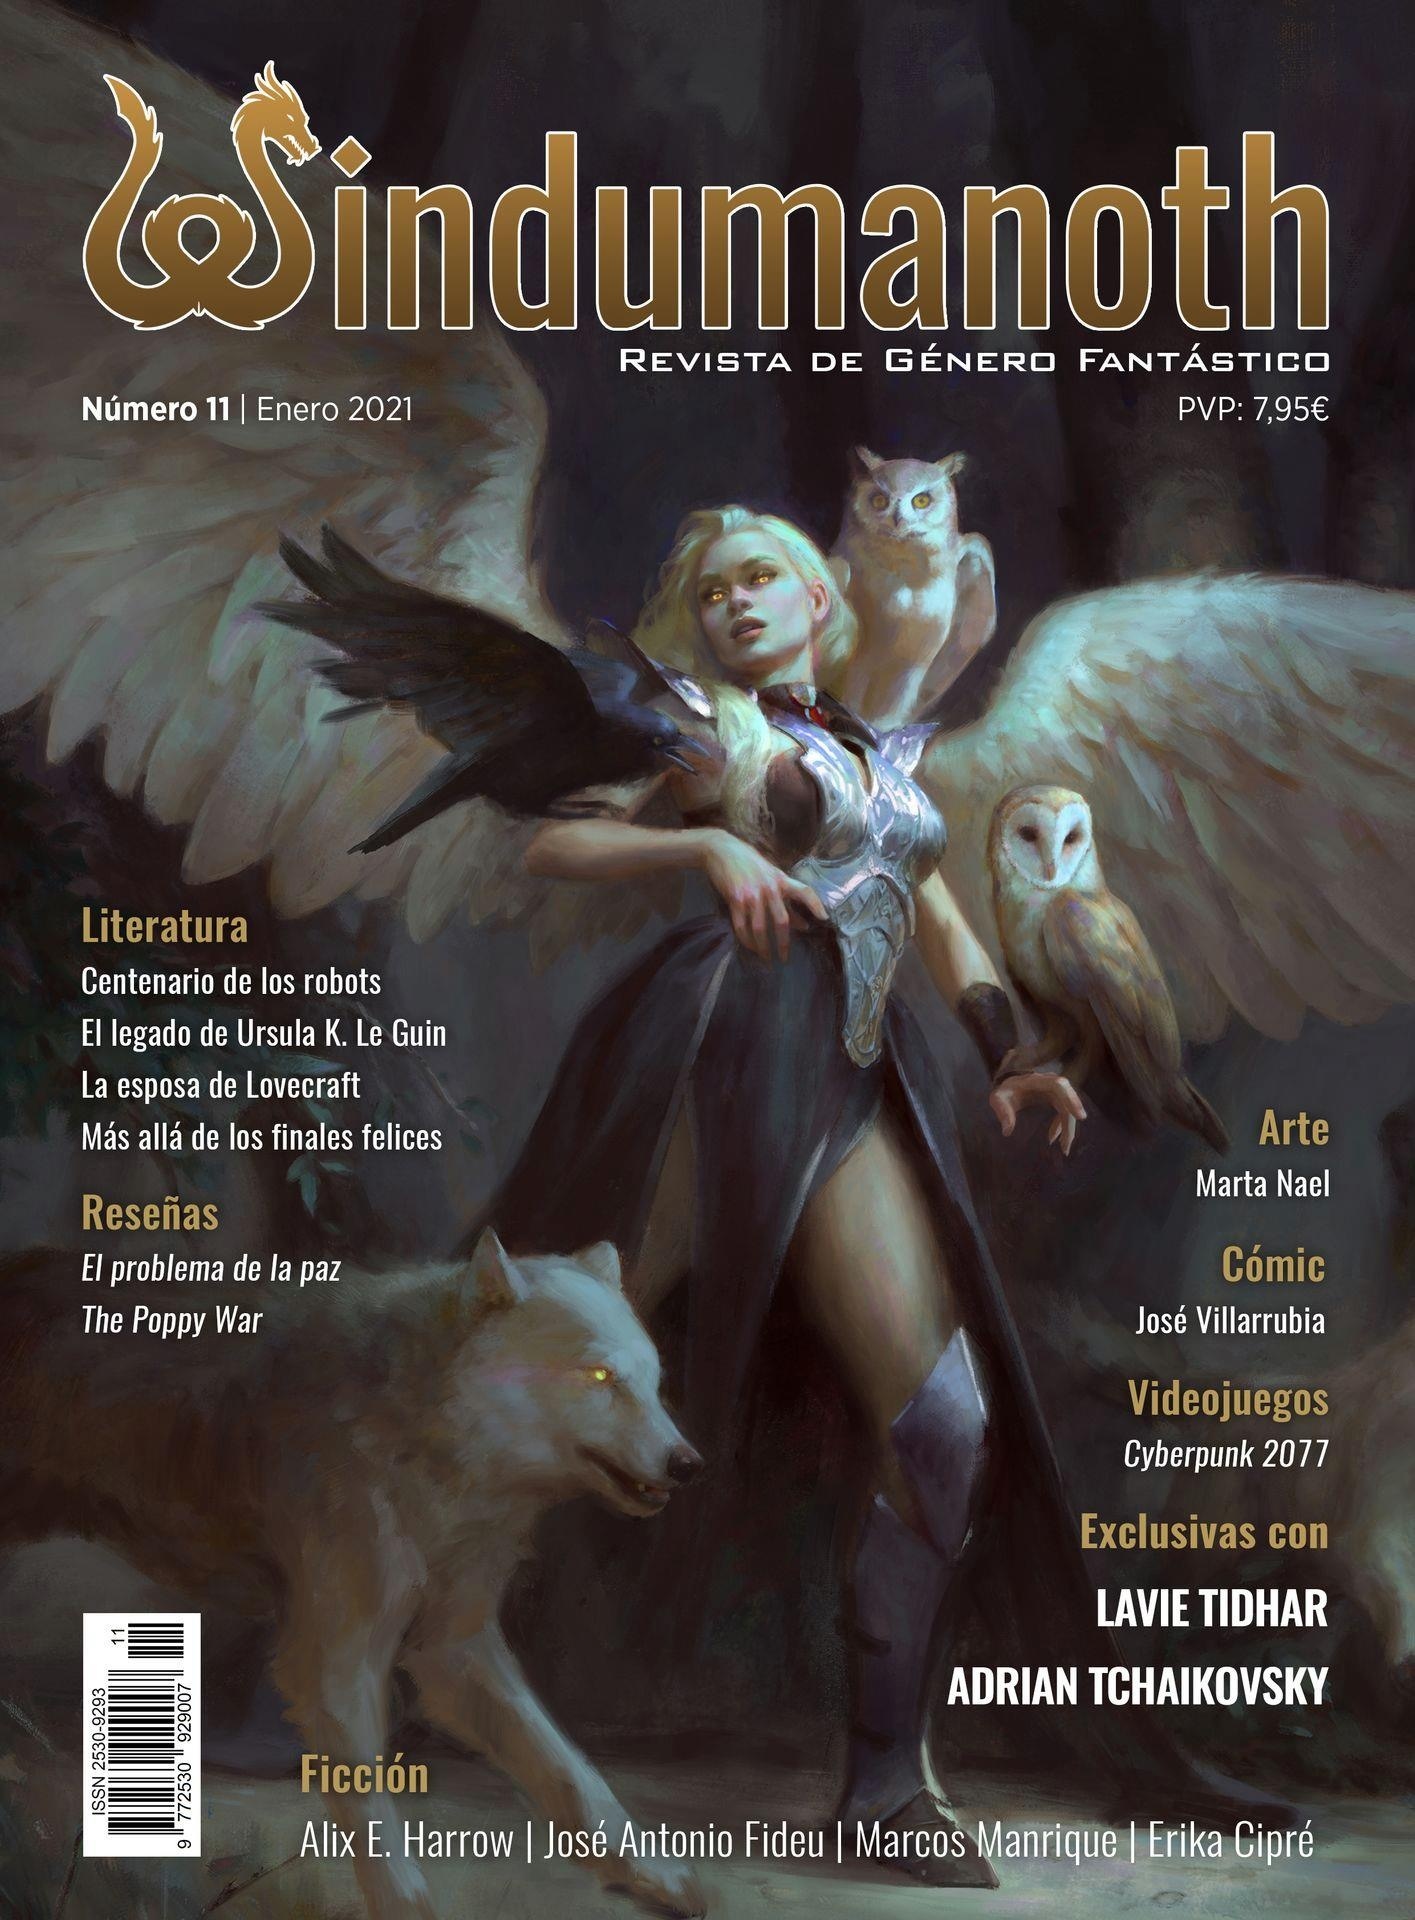 Windumanoth nº 11. Enero 2021 "Revista de género fantástico"